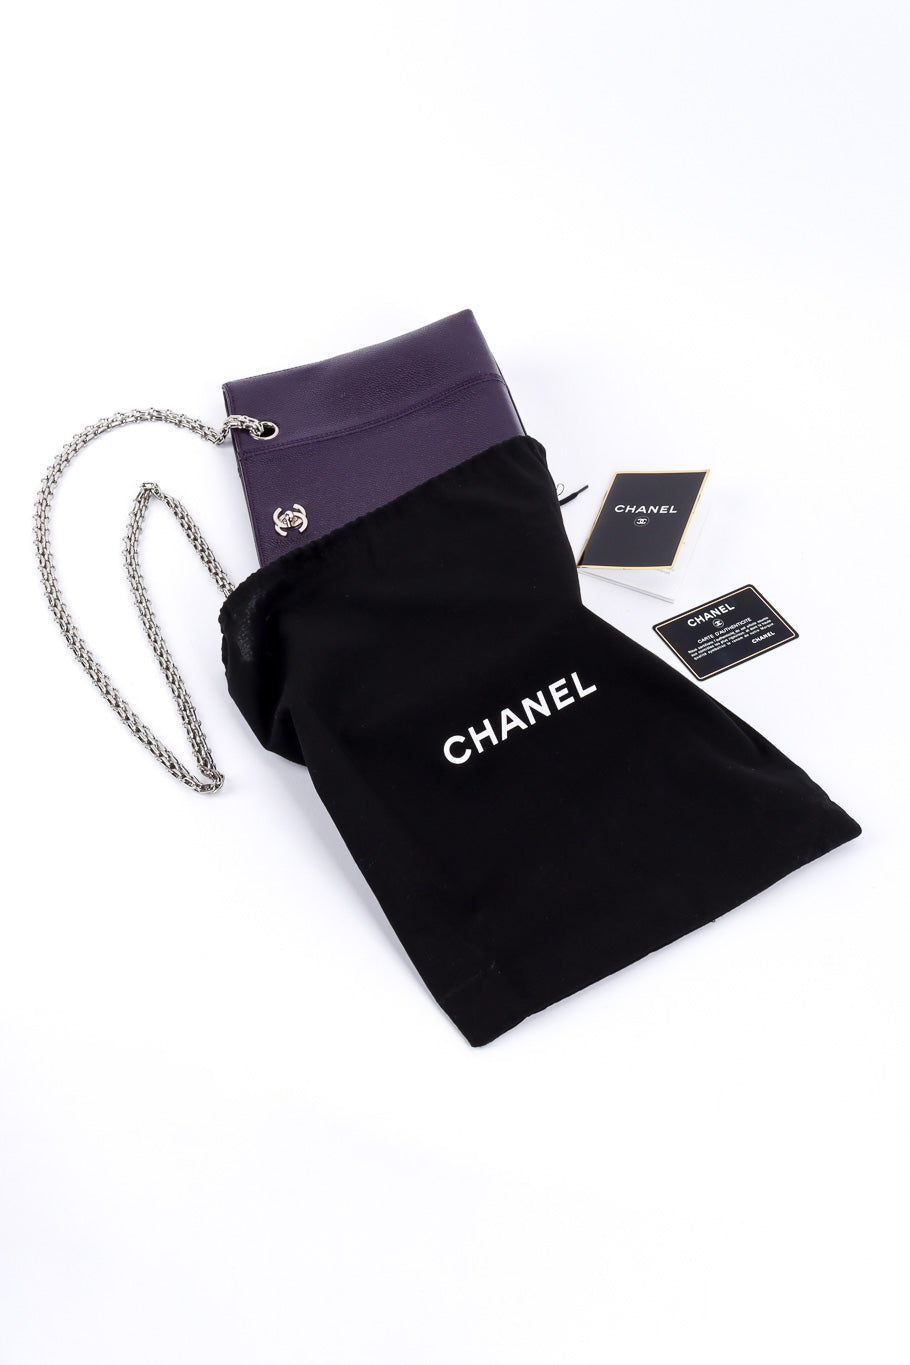 Chanel Bijoux Chain Shoulder Bag dust bag and authenticity card @recessla